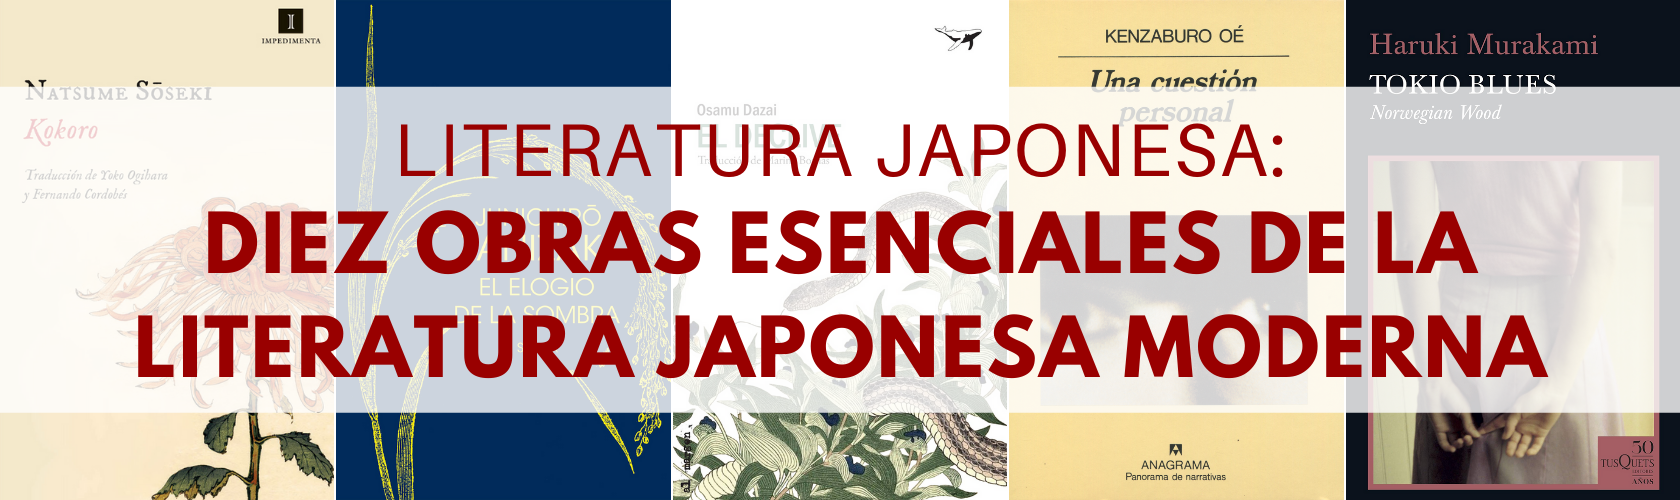 diez obras esenciales de la literatura japonesa moderna